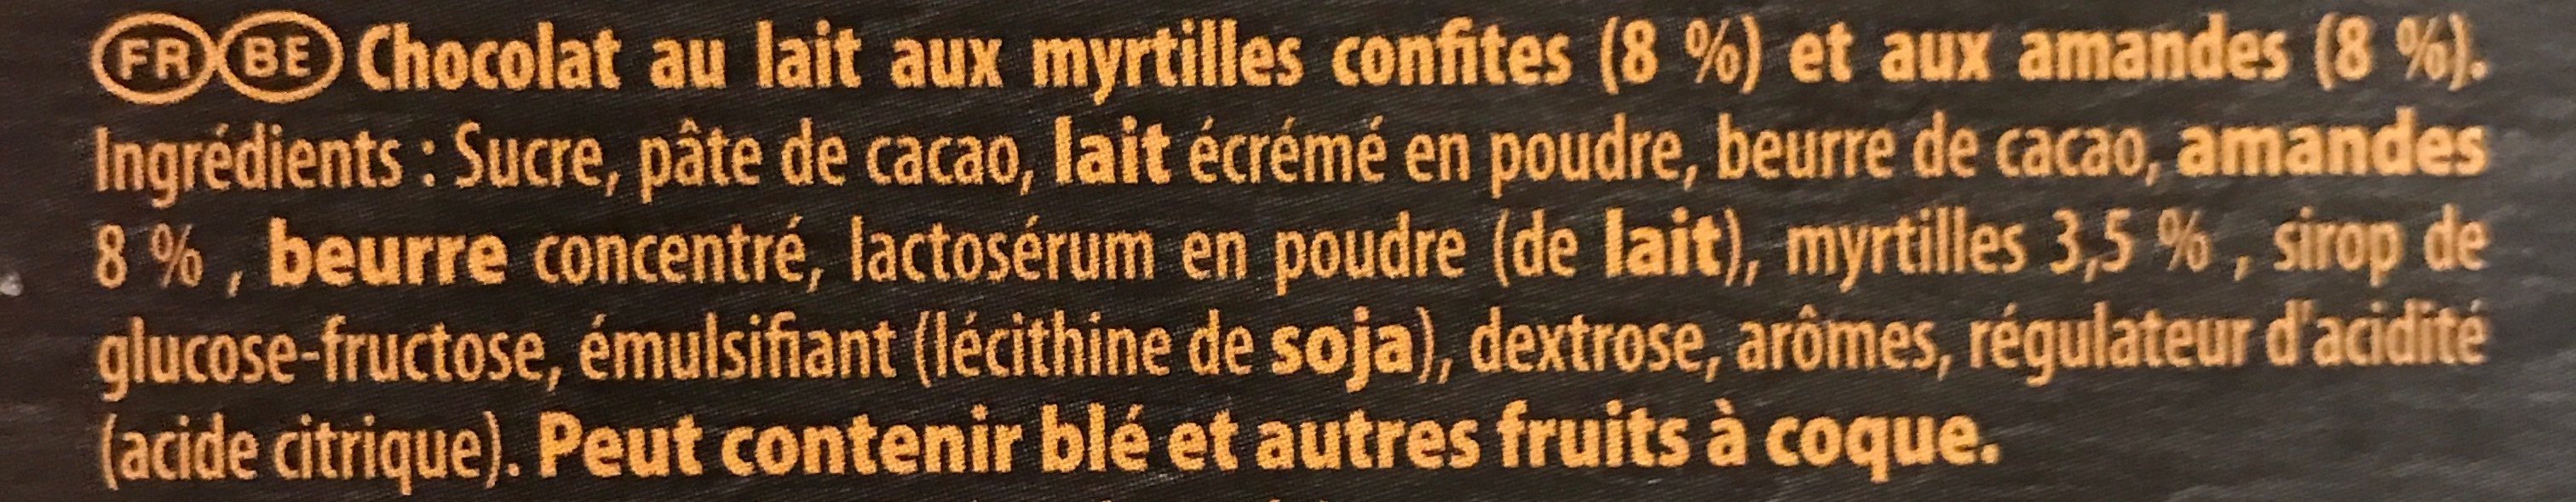 Chocolat au lait aux myrtilles confites et aux amandes - Ingredients - fr